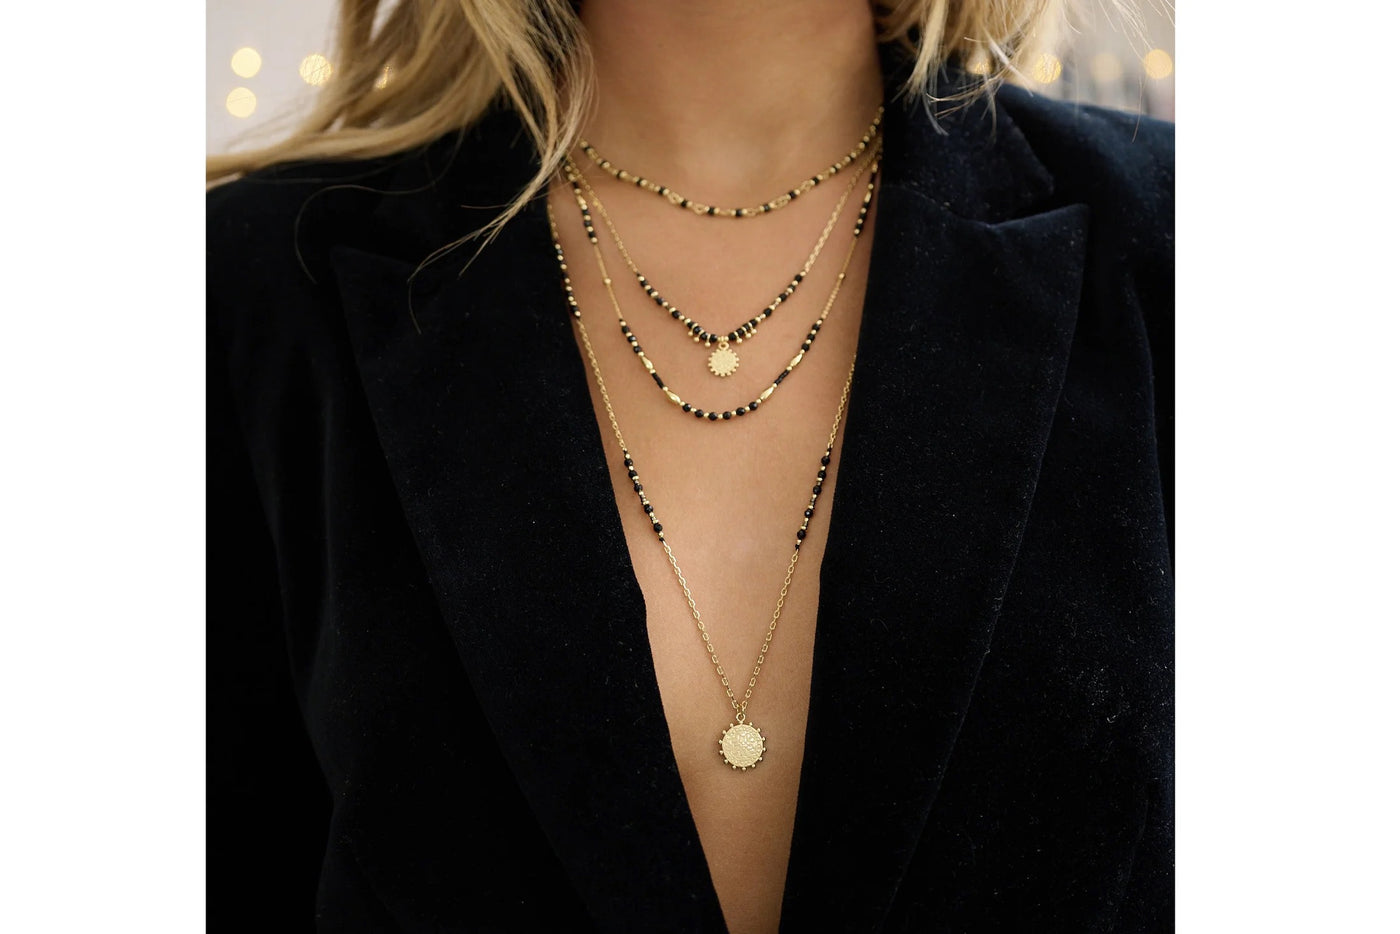 Boho Betty Horus Black Spinel Gemstone Gold Necklace